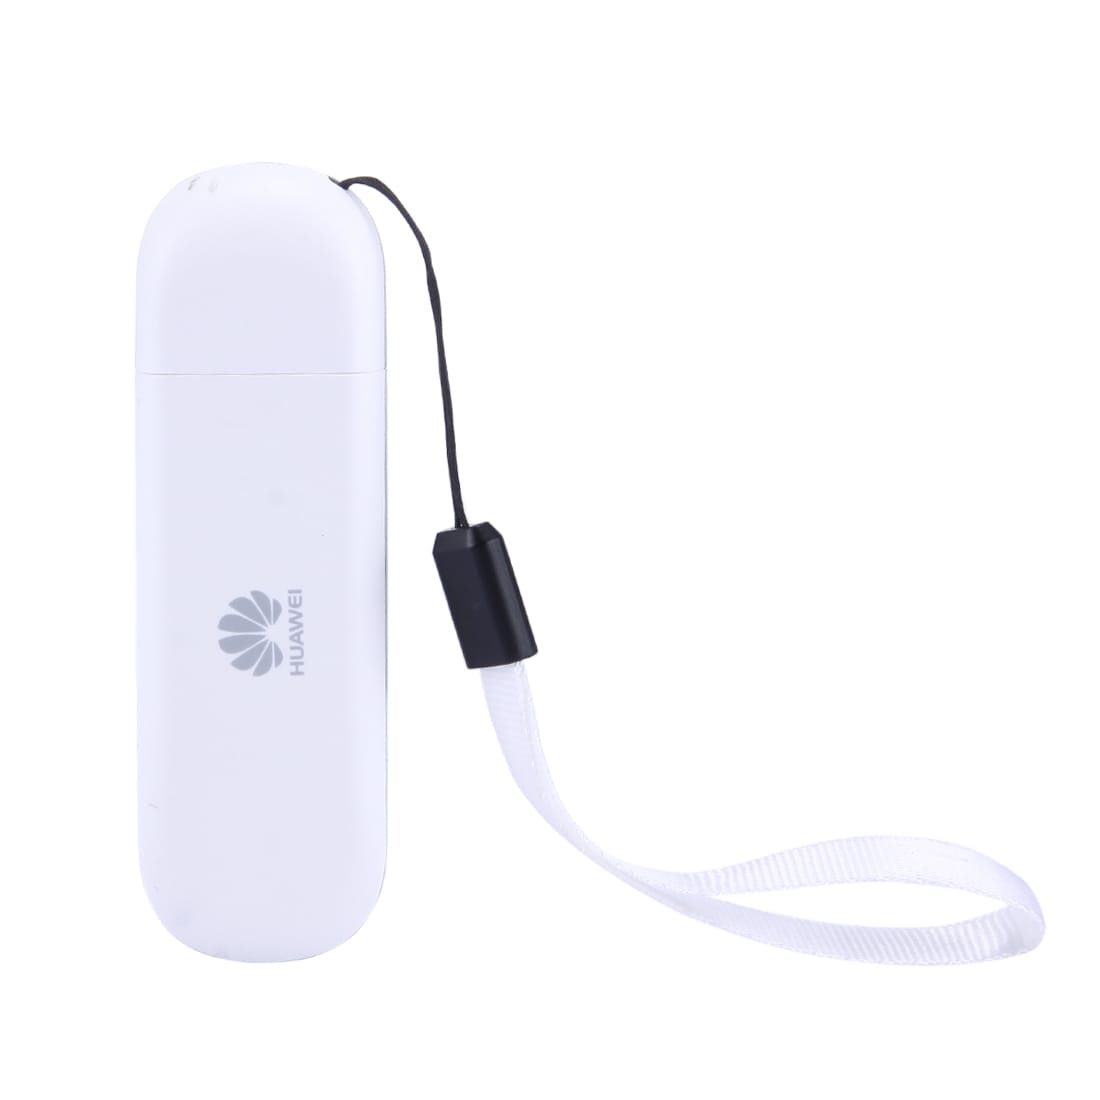 Huawei E303 3G USB-Modeemi 7.2Mbps